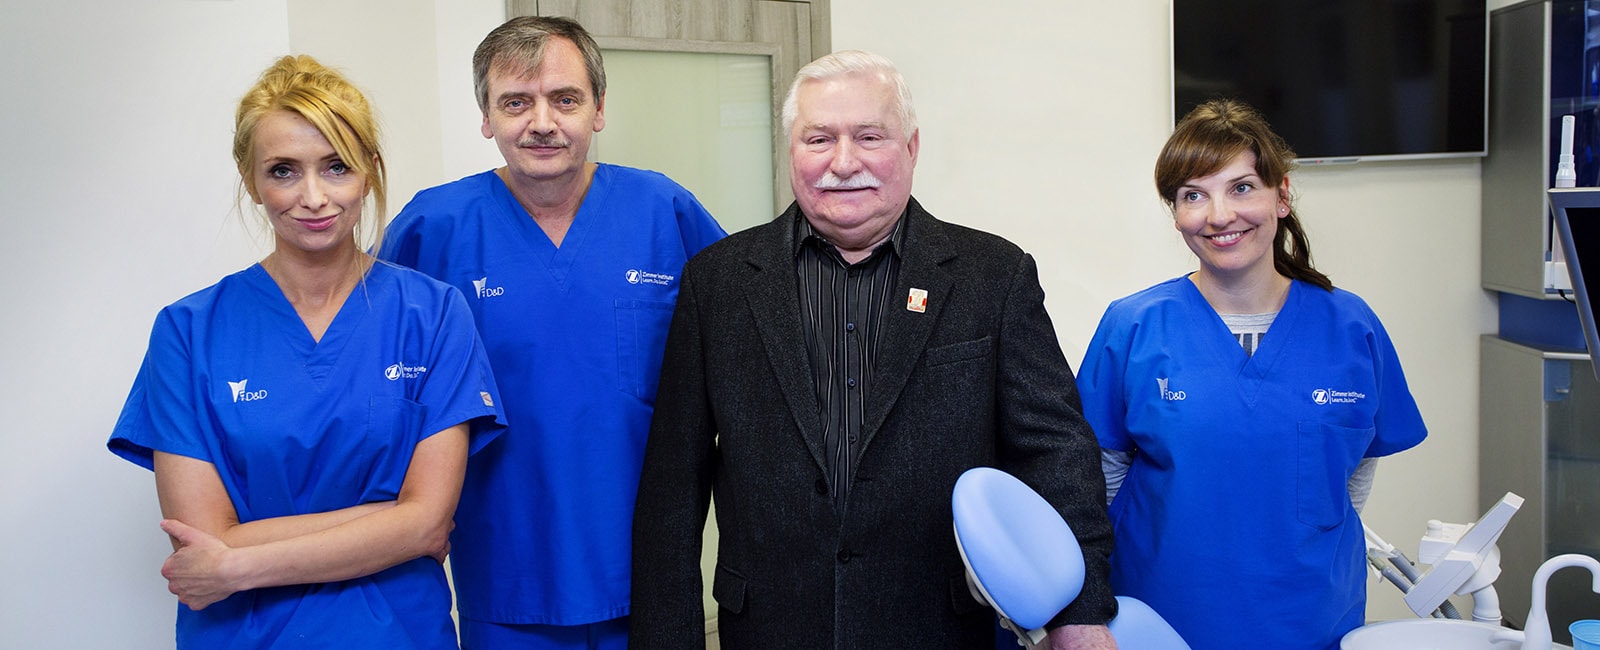 Centrum Stomatologiczno-Implantologiczne Dijakiewicz